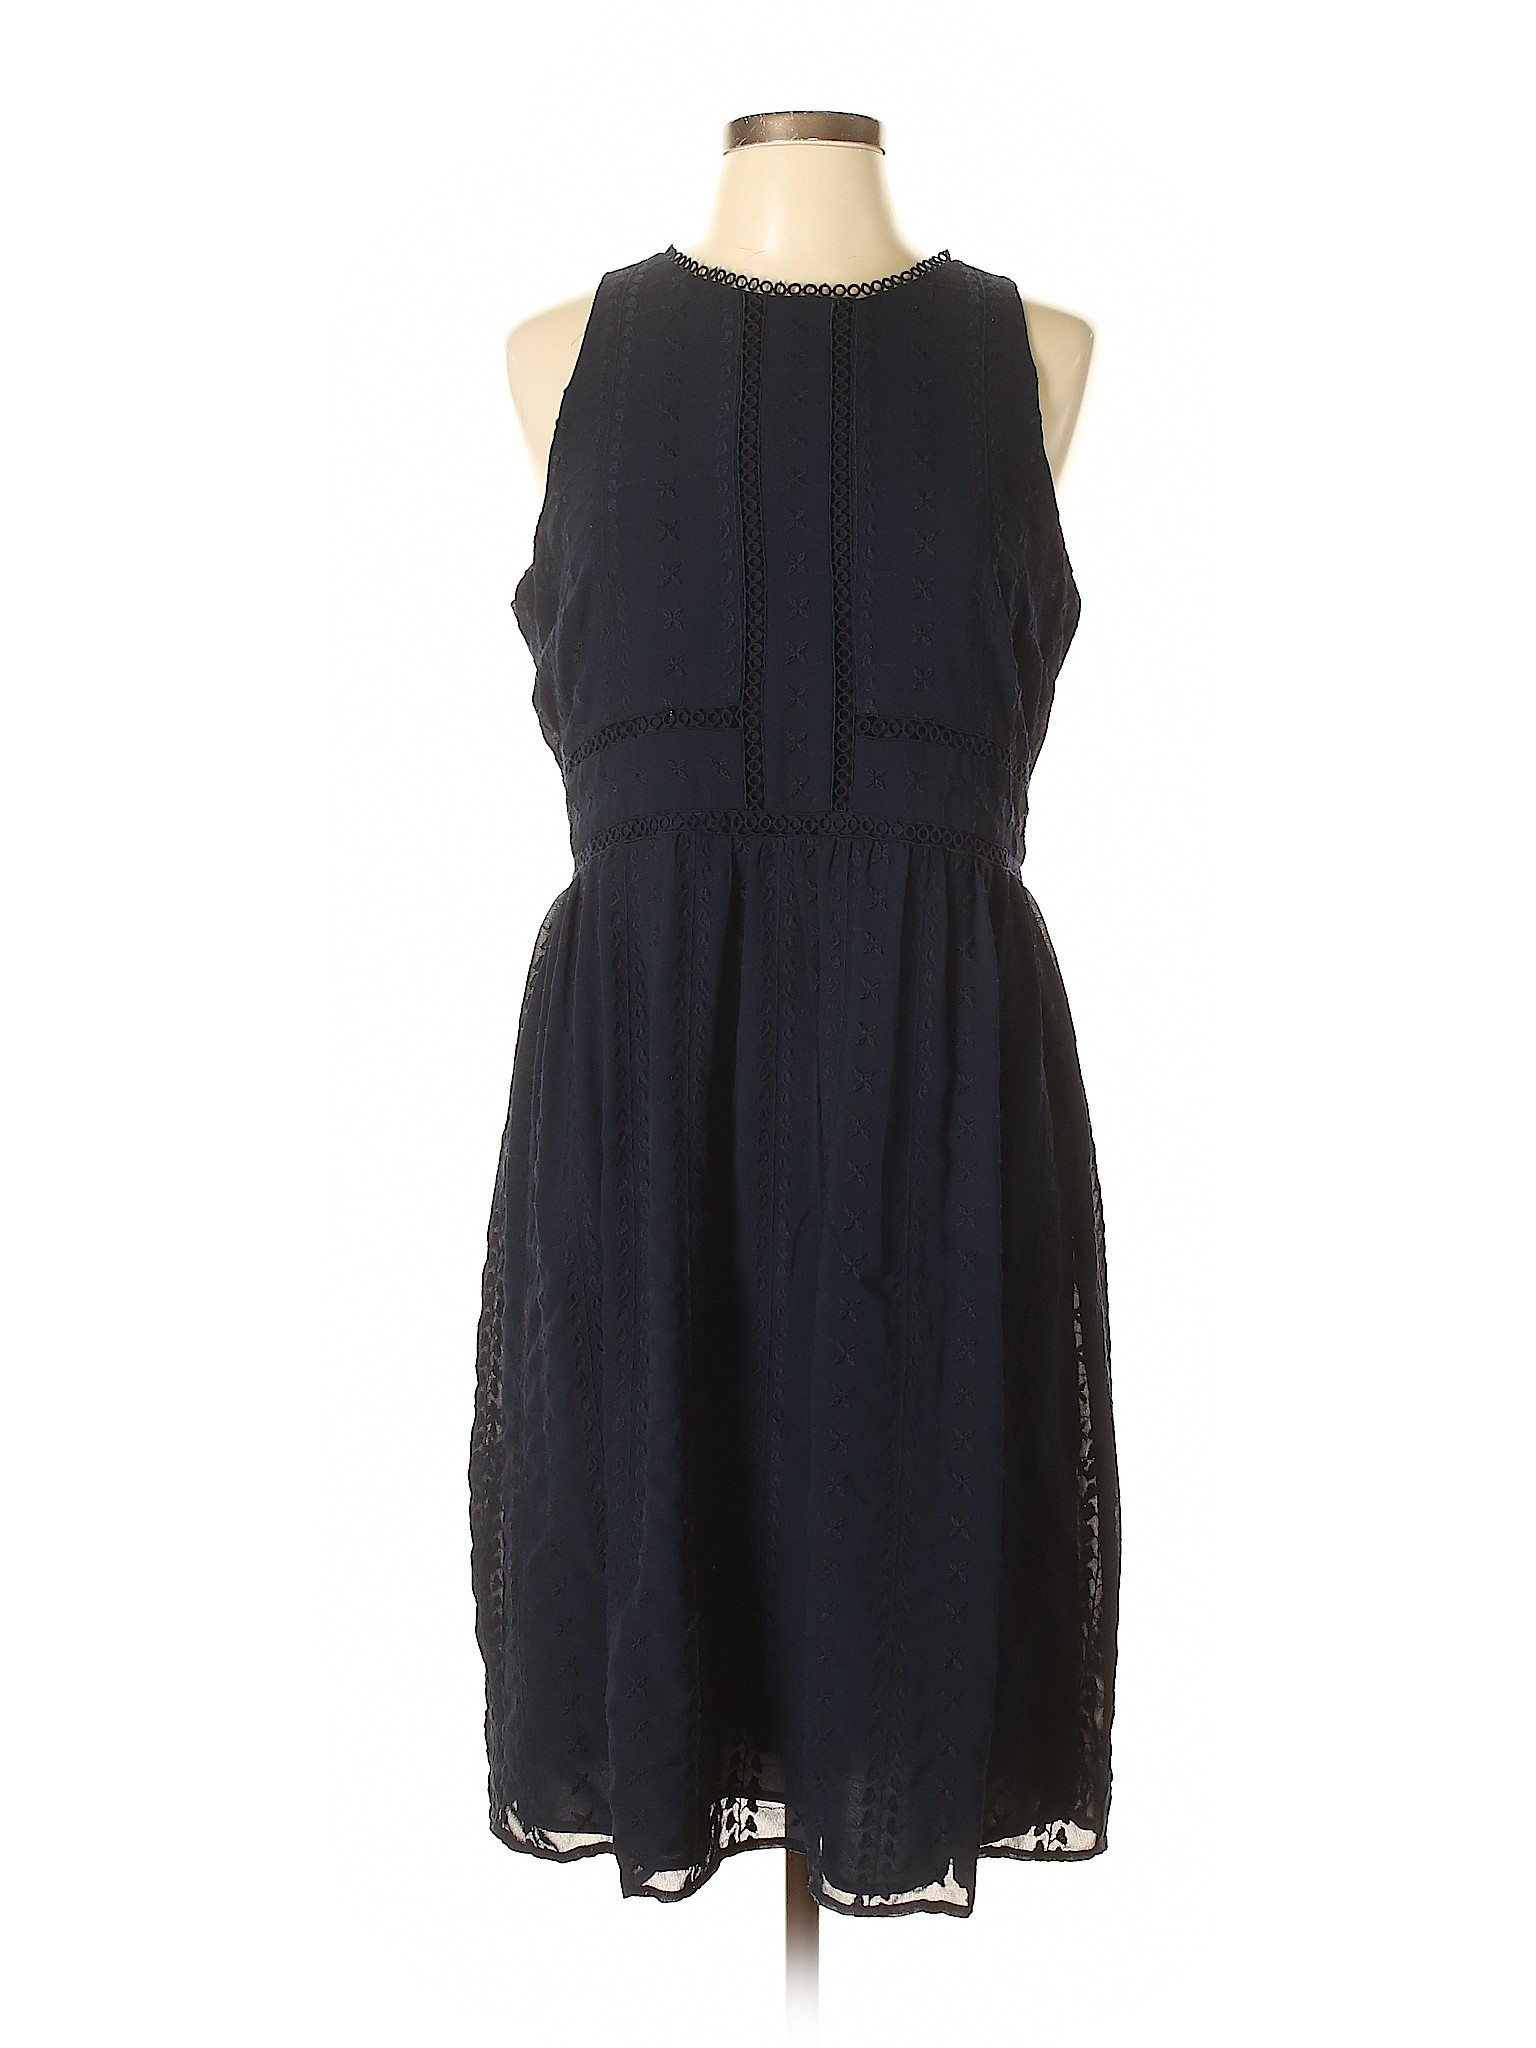 Ann Taylor Loft Women Blue Casual Dress 12 Petite | eBay